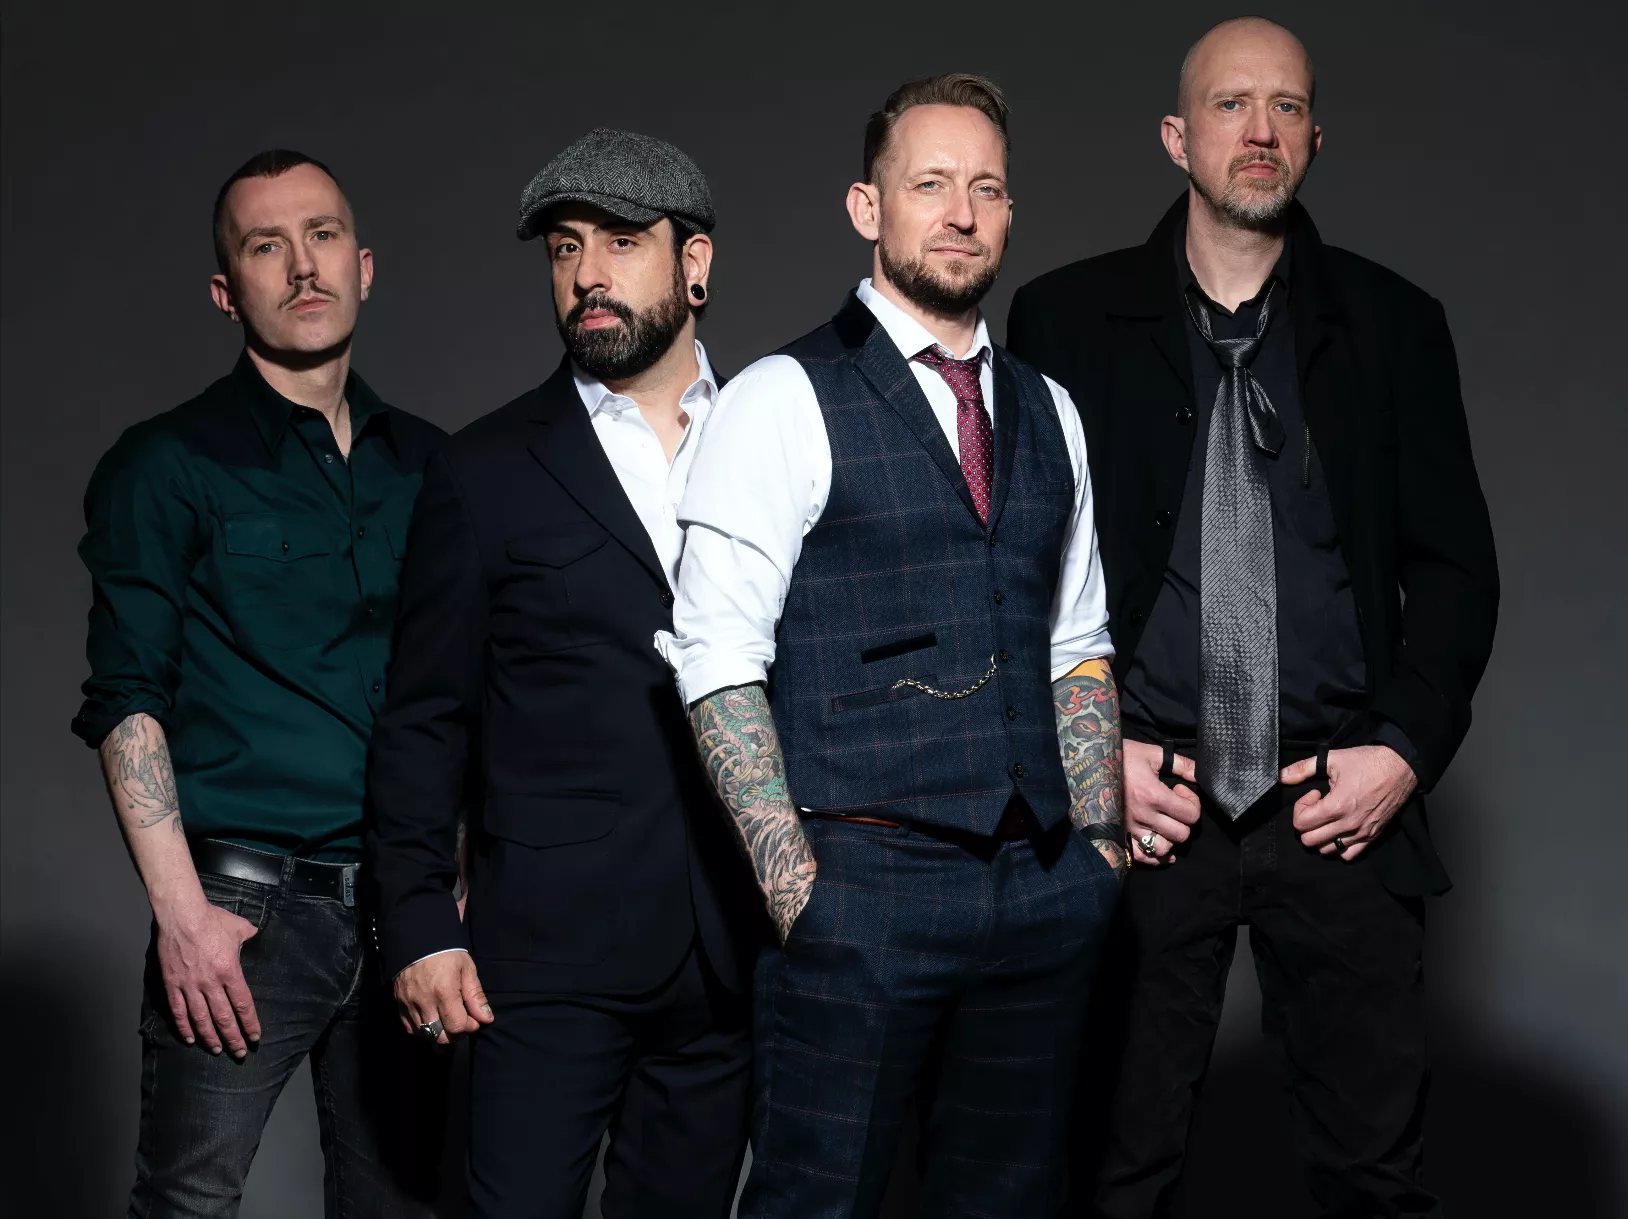 GAFFA og mange andre danske medier boykotter Volbeat